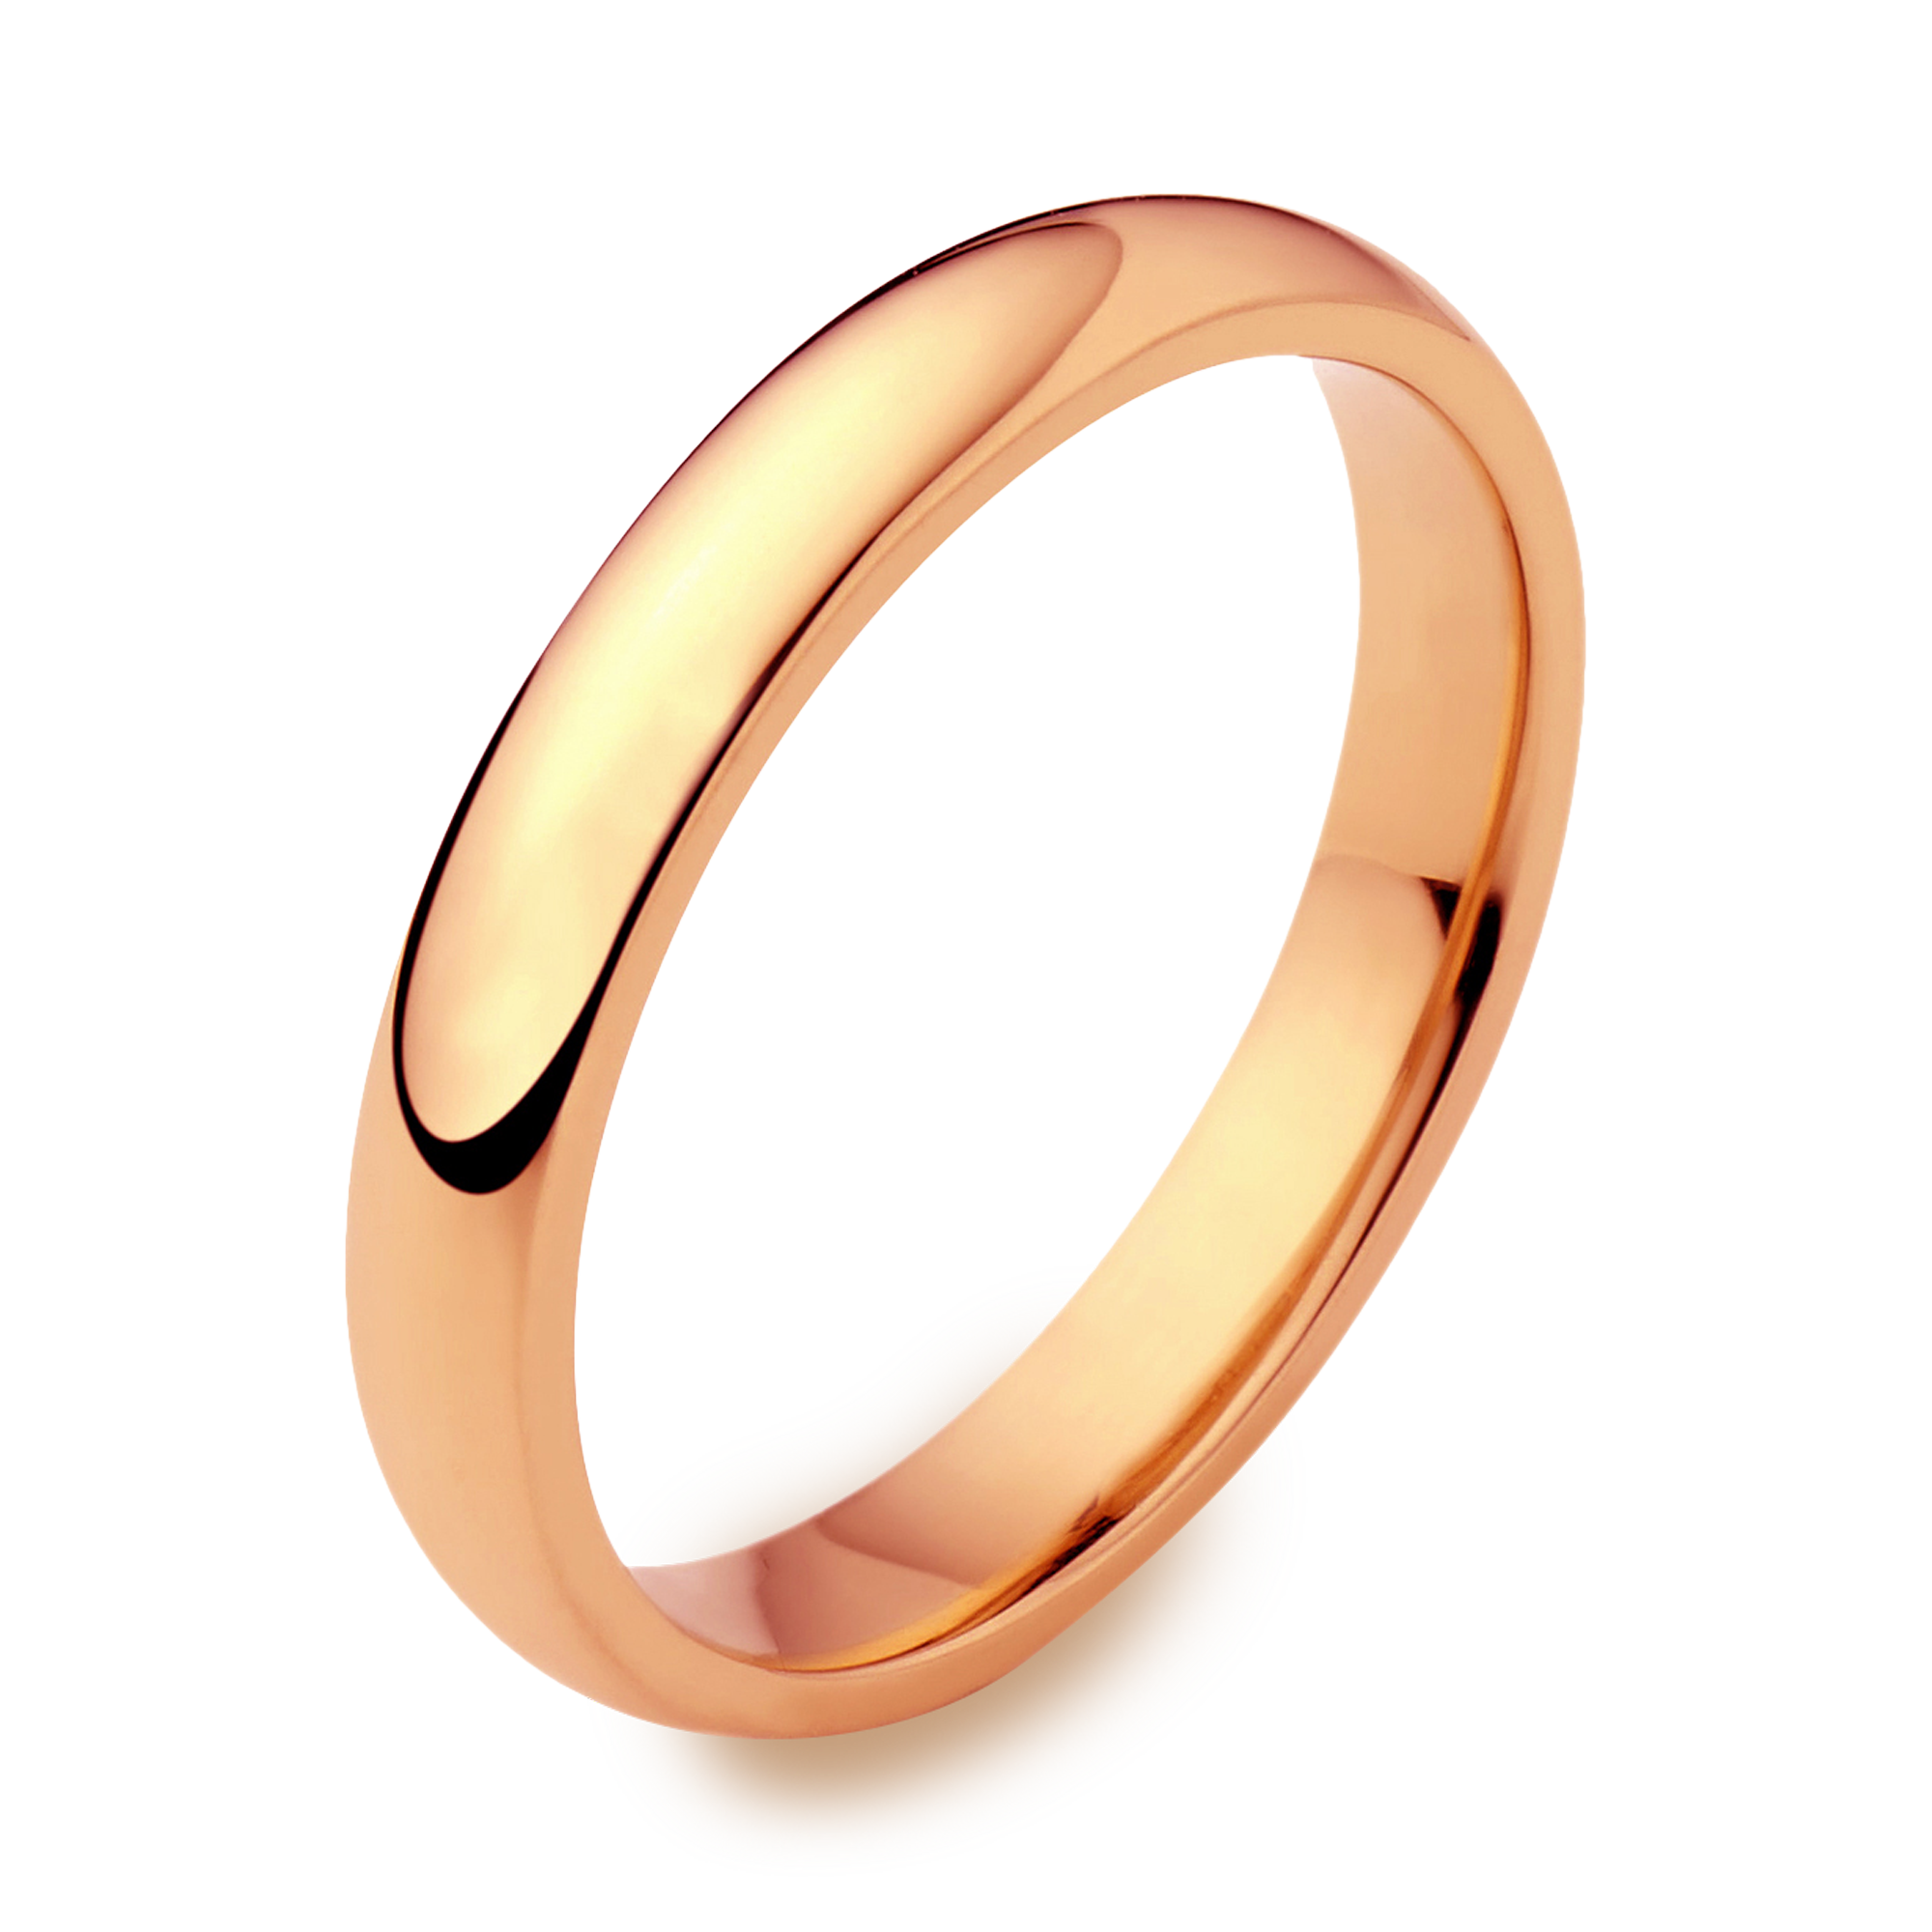 3mm Pragnell Court Wedding Ring _1